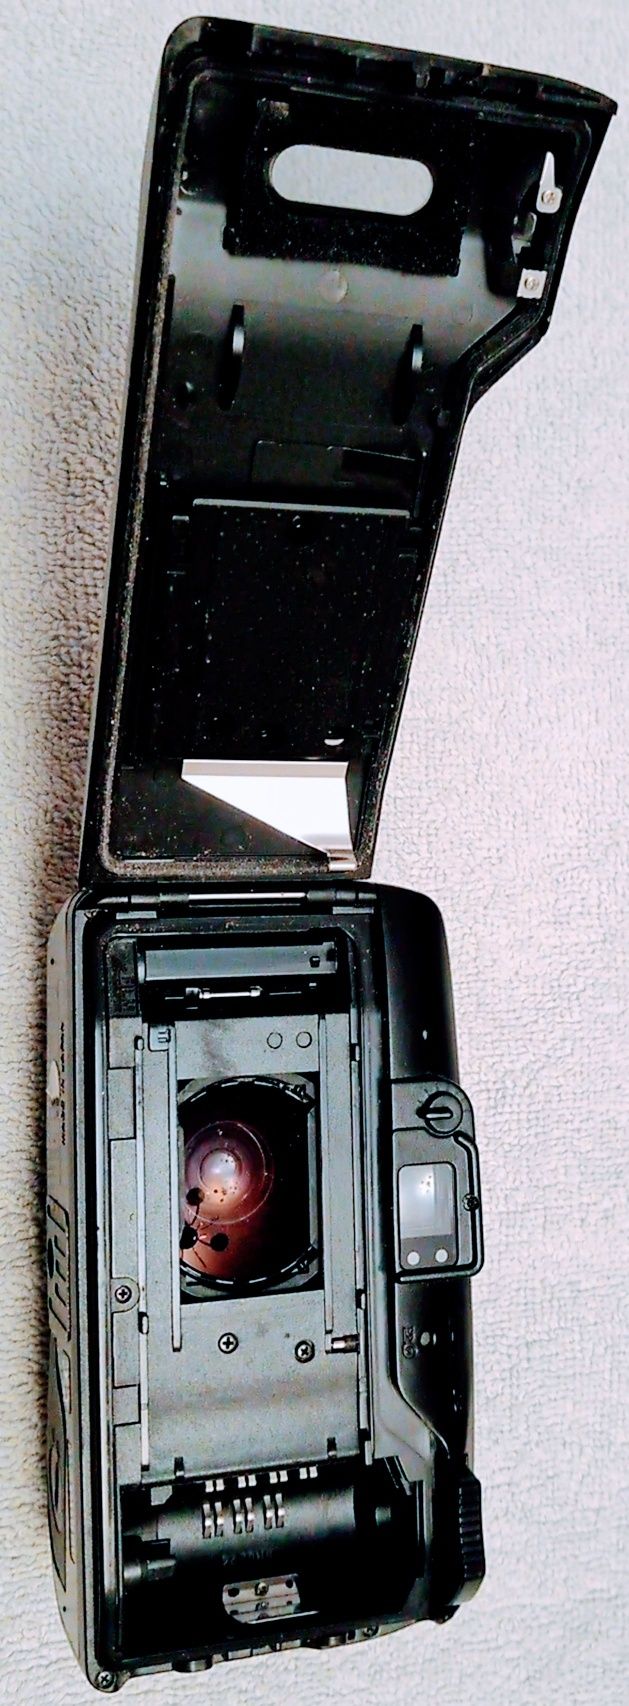 Máquina fotográfica usada.